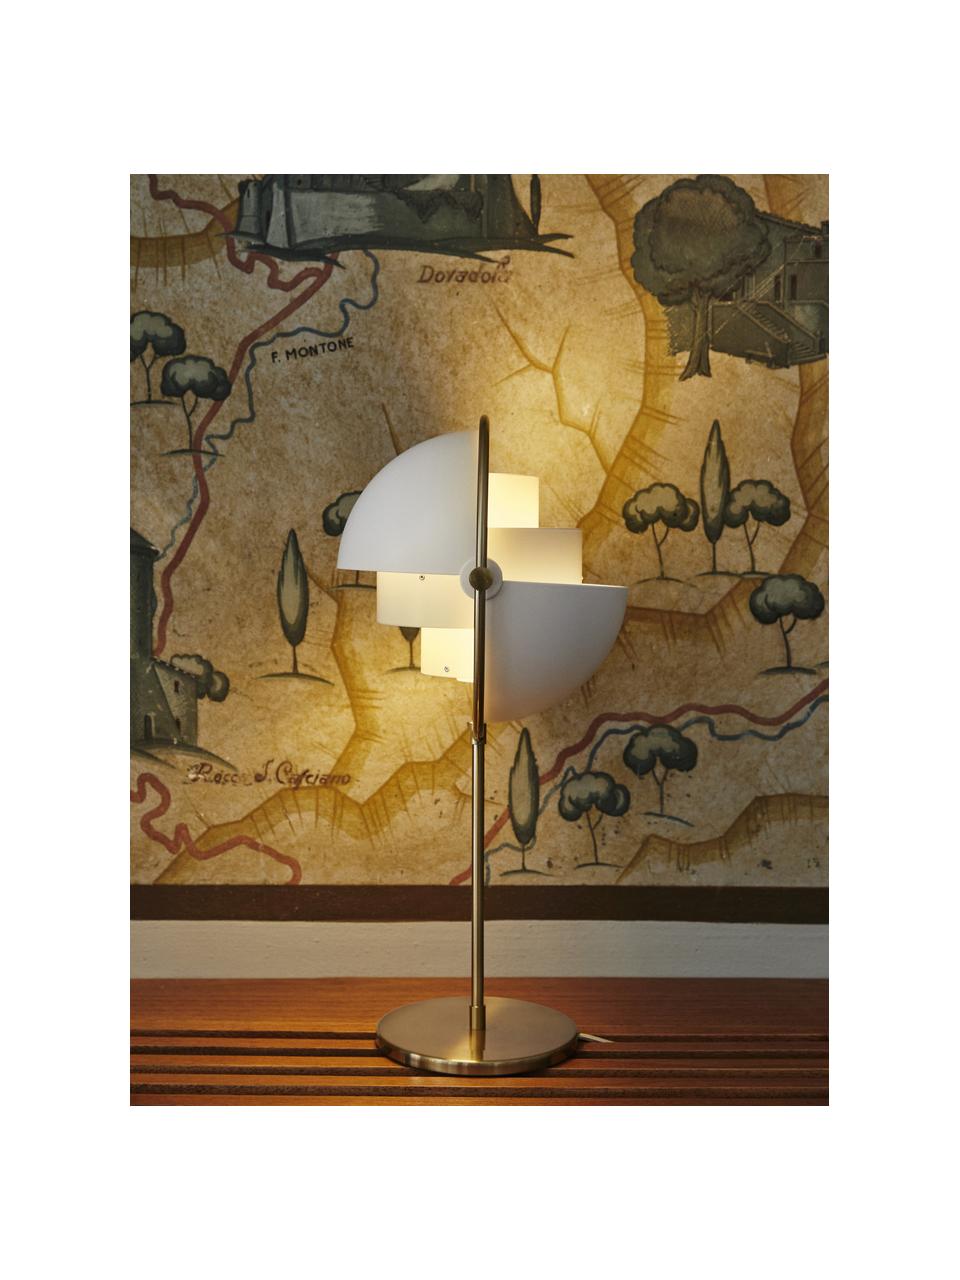 Lampa stołowa Multi-Lite, Aluminium powlekane, Biały matowy, odcienie złotego matowy, Ø 24 x W 50 cm